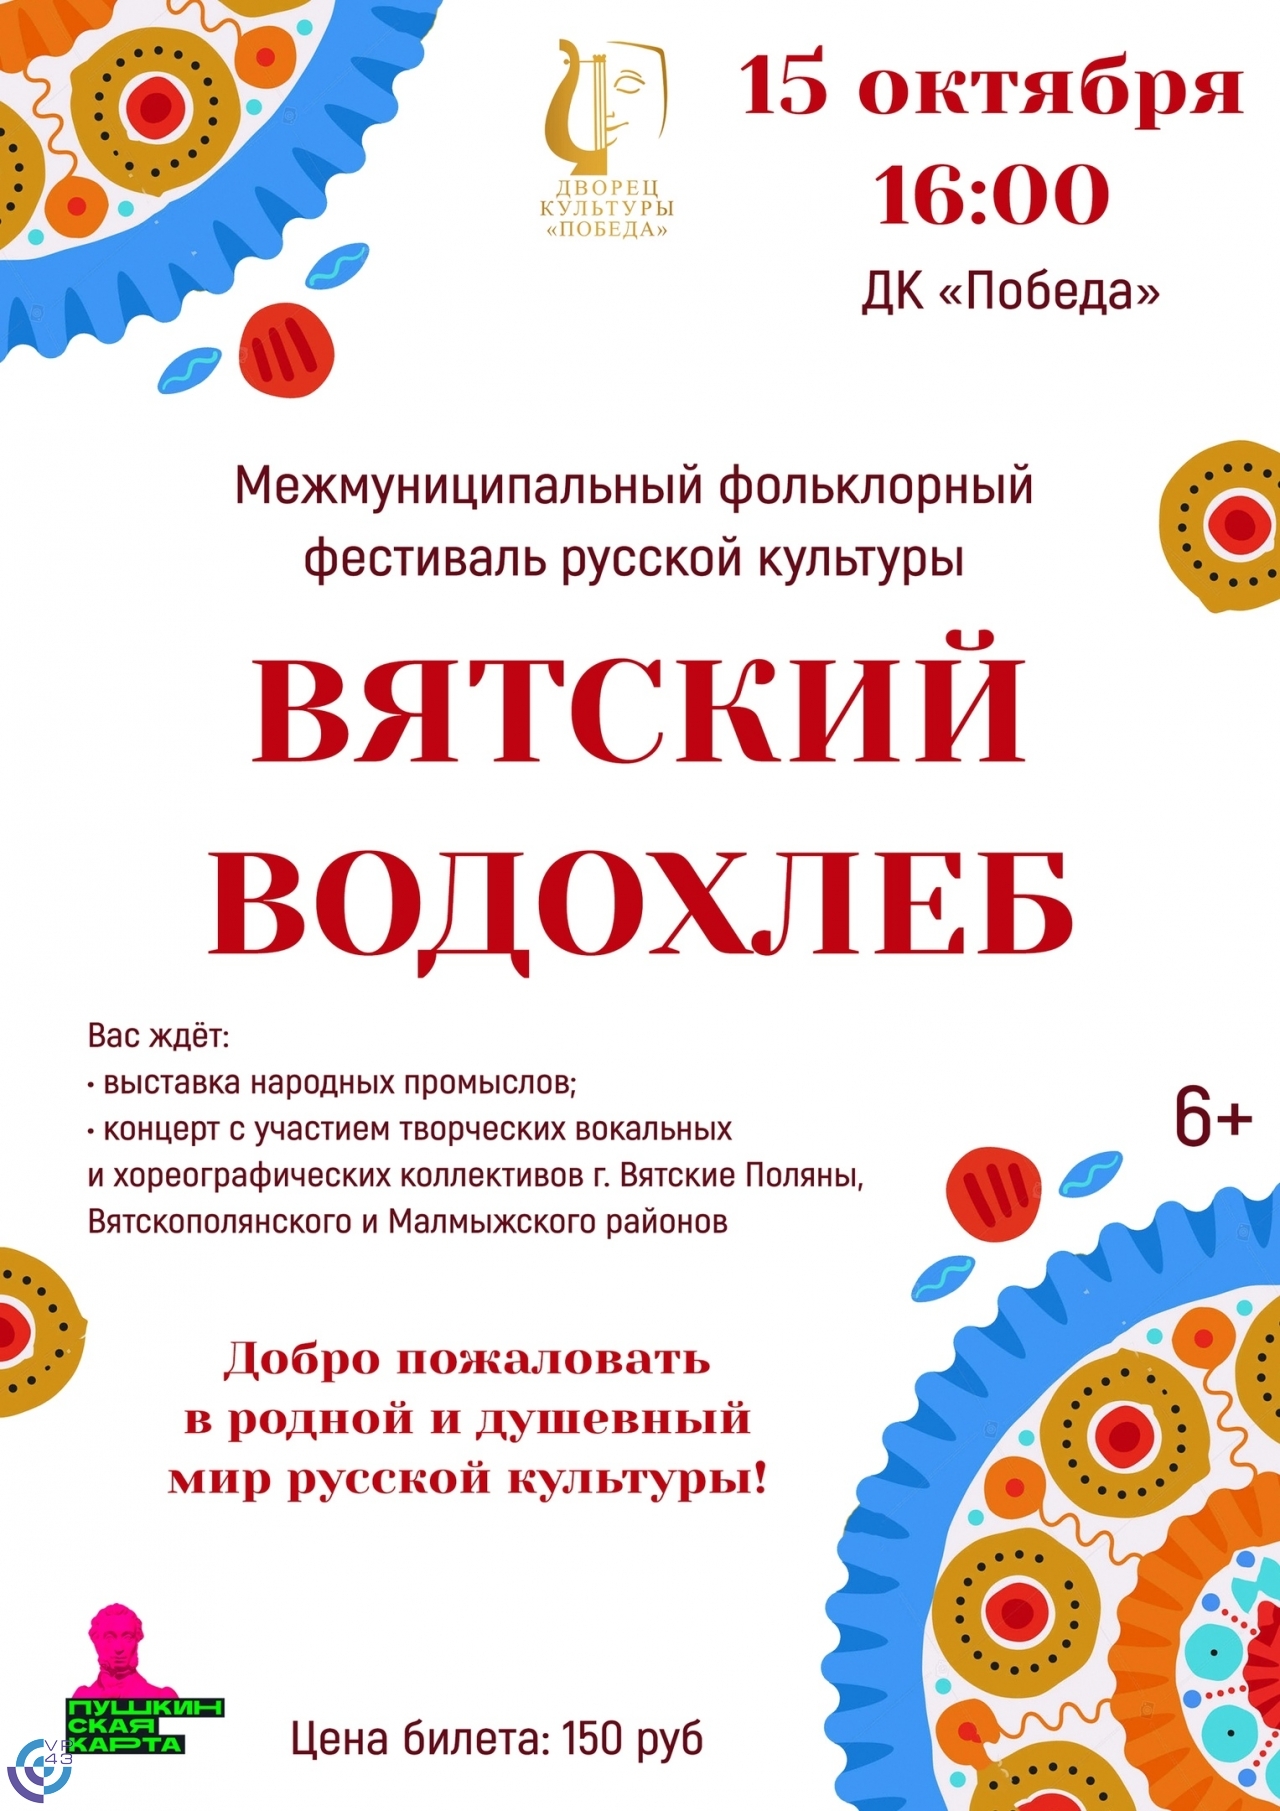 Событие: ДК Победа - Межмуниципальный фольклорный фестиваль русской культуры